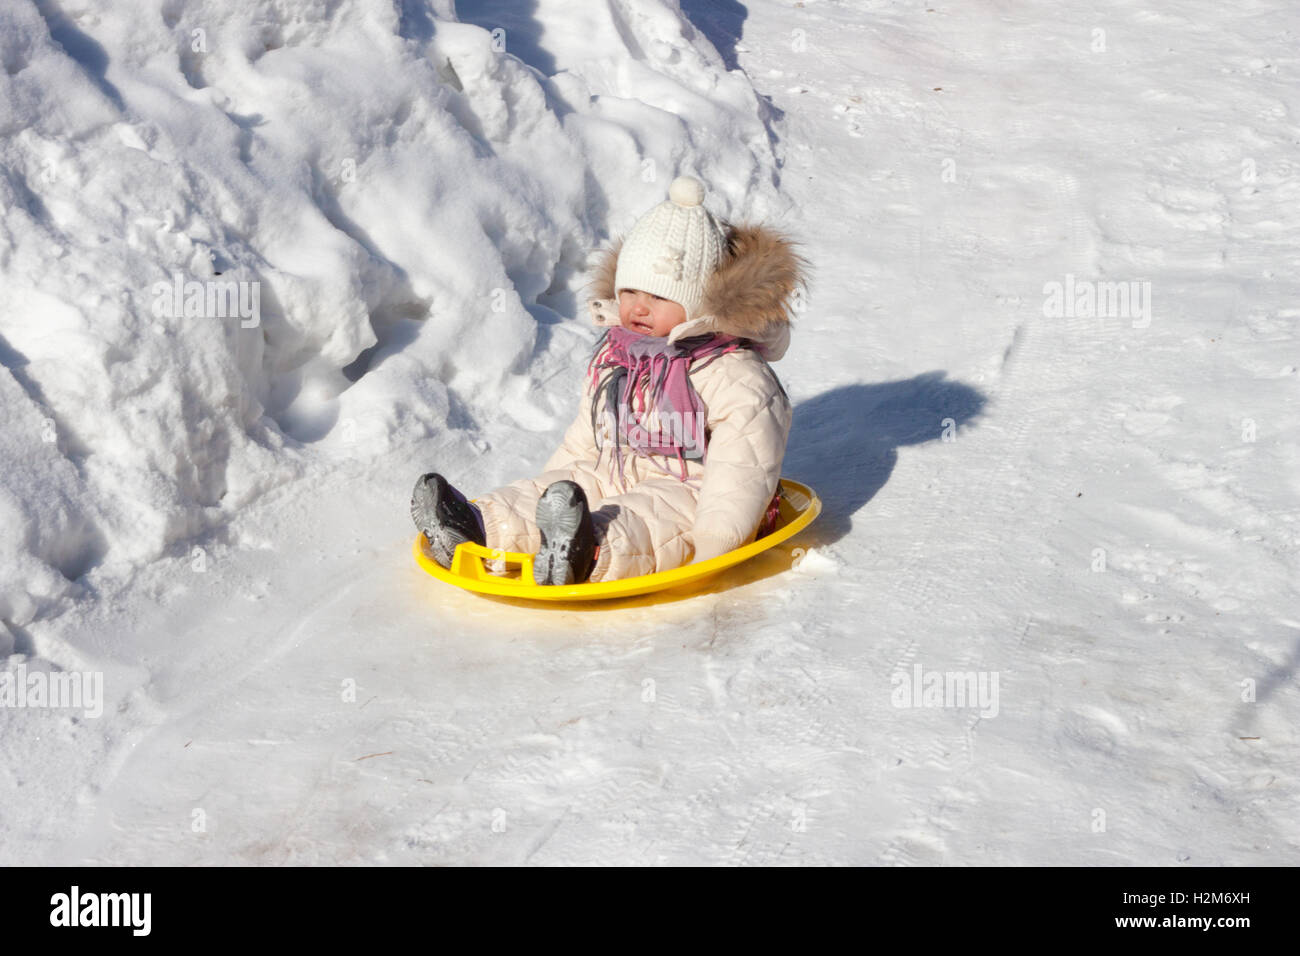 Équitation enfant roller coaster en hiver Banque D'Images